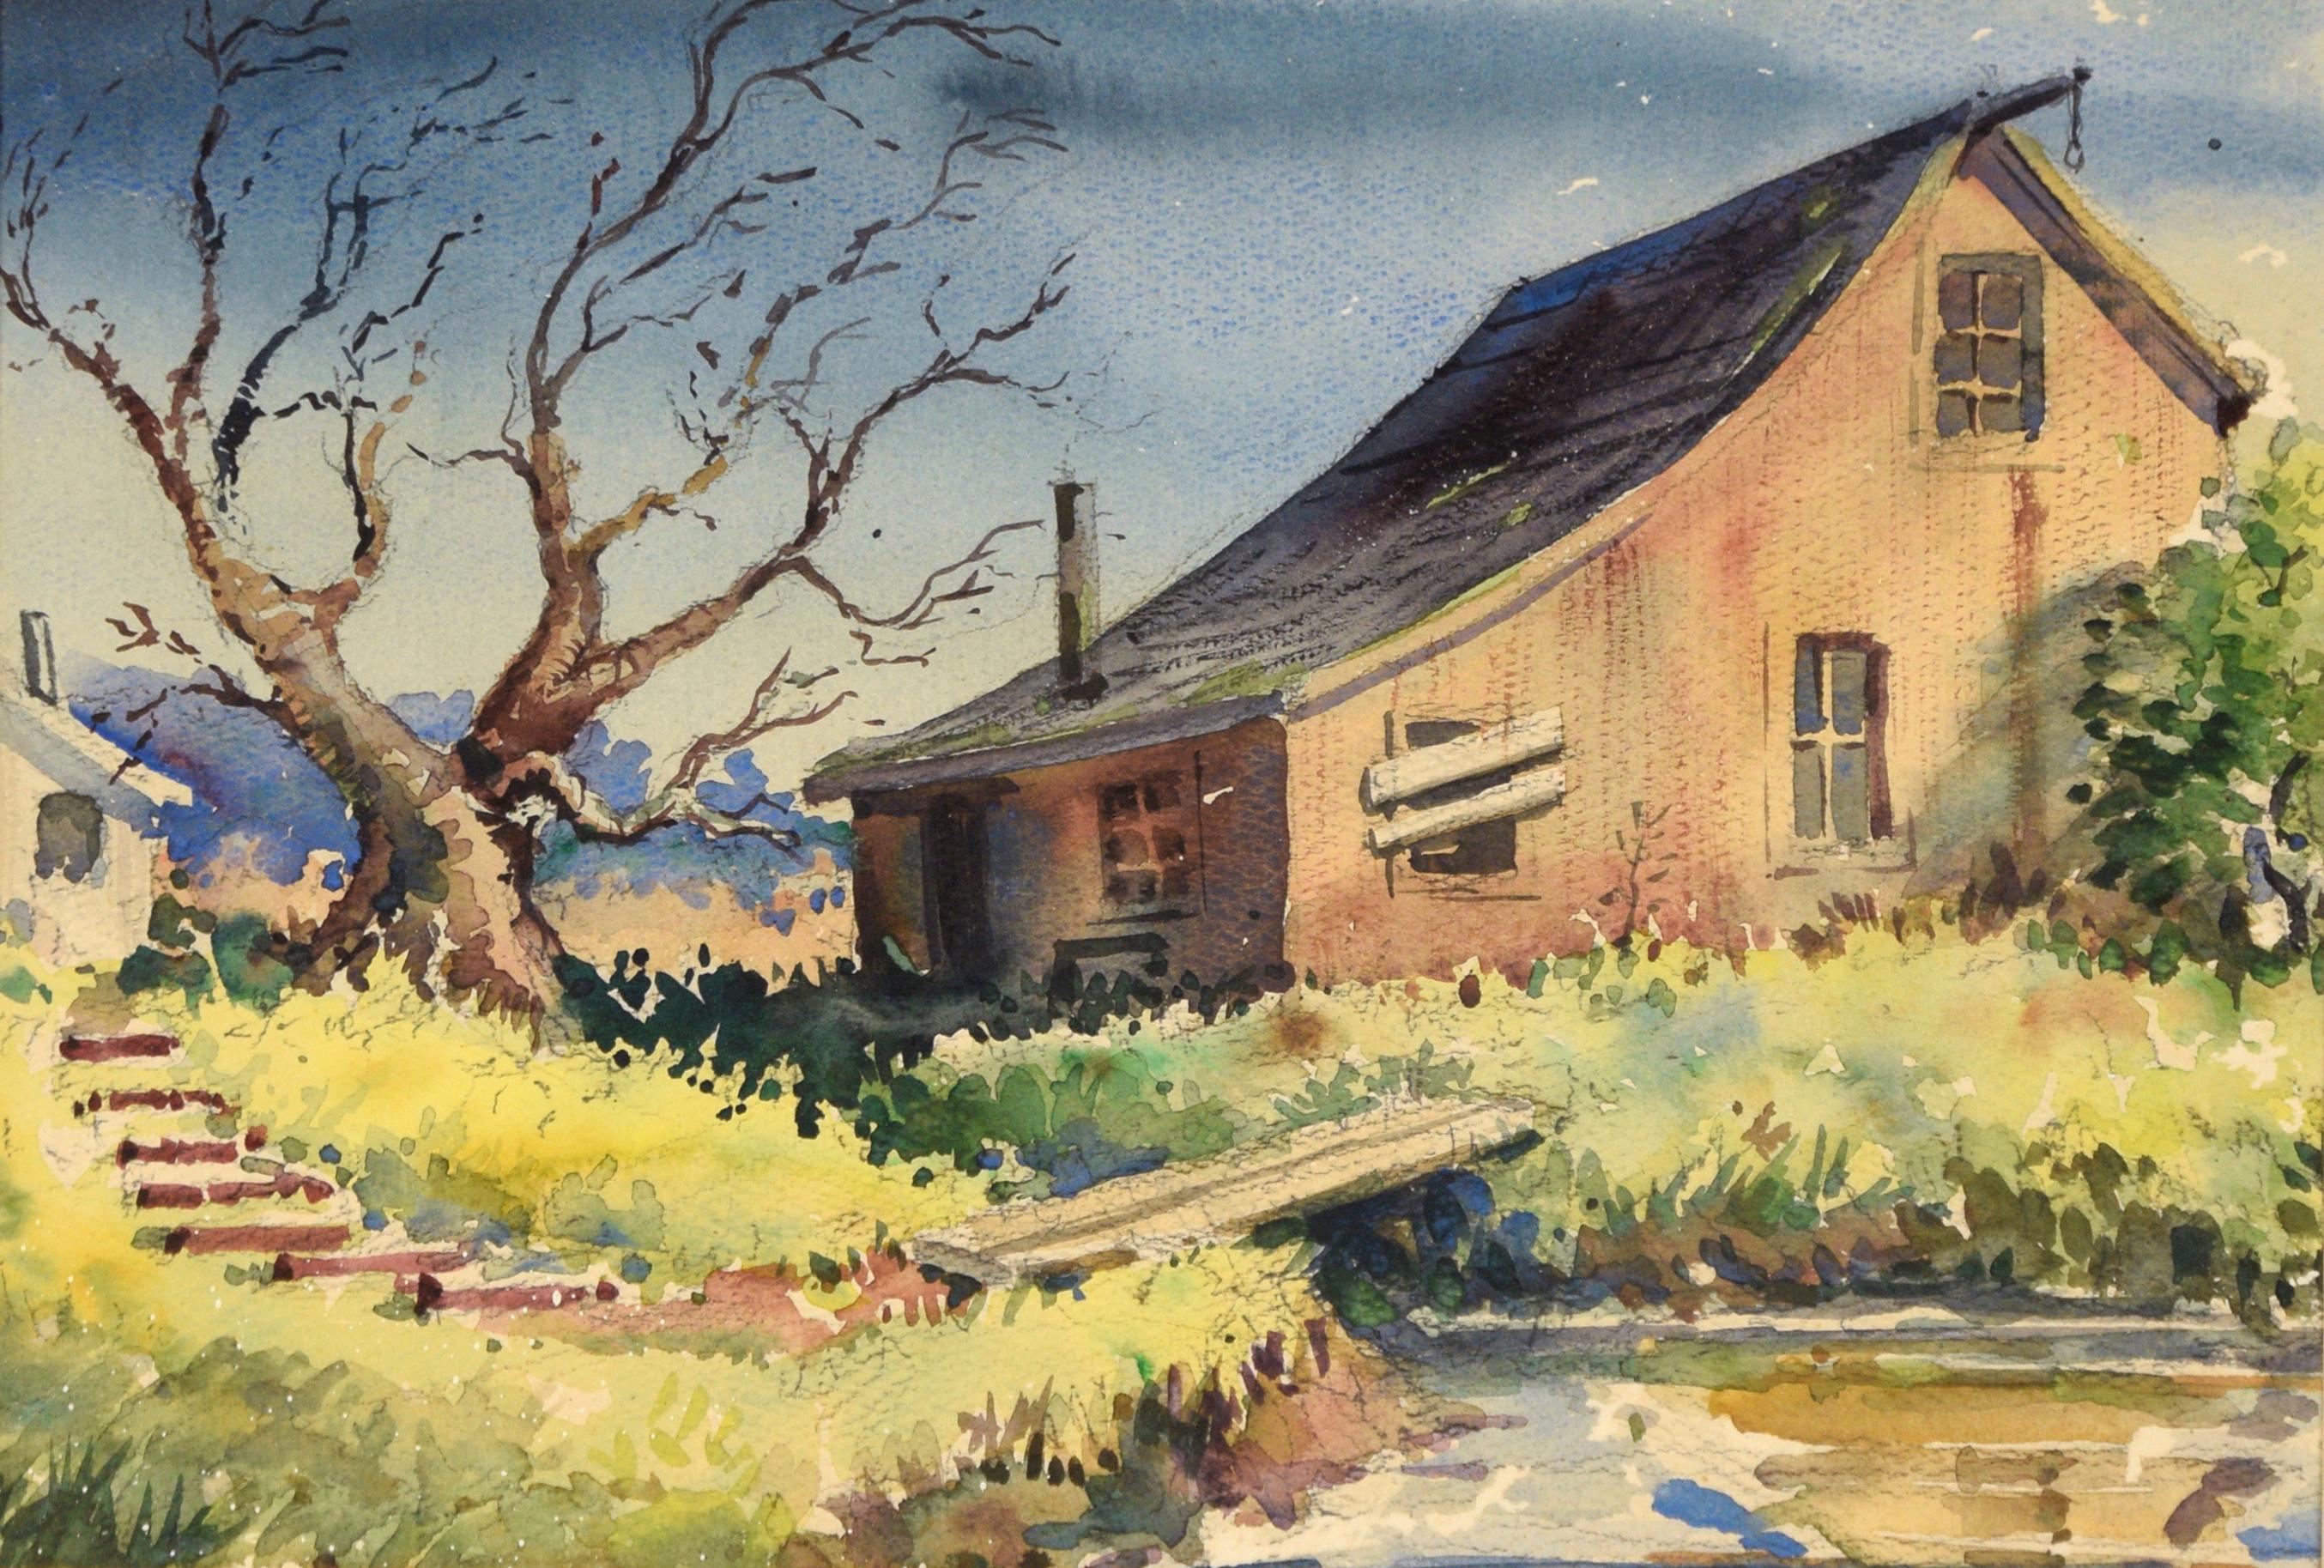 The Old Barn - Paysage de ferme à l'aquarelle sur papier - Art de Edwin Haas